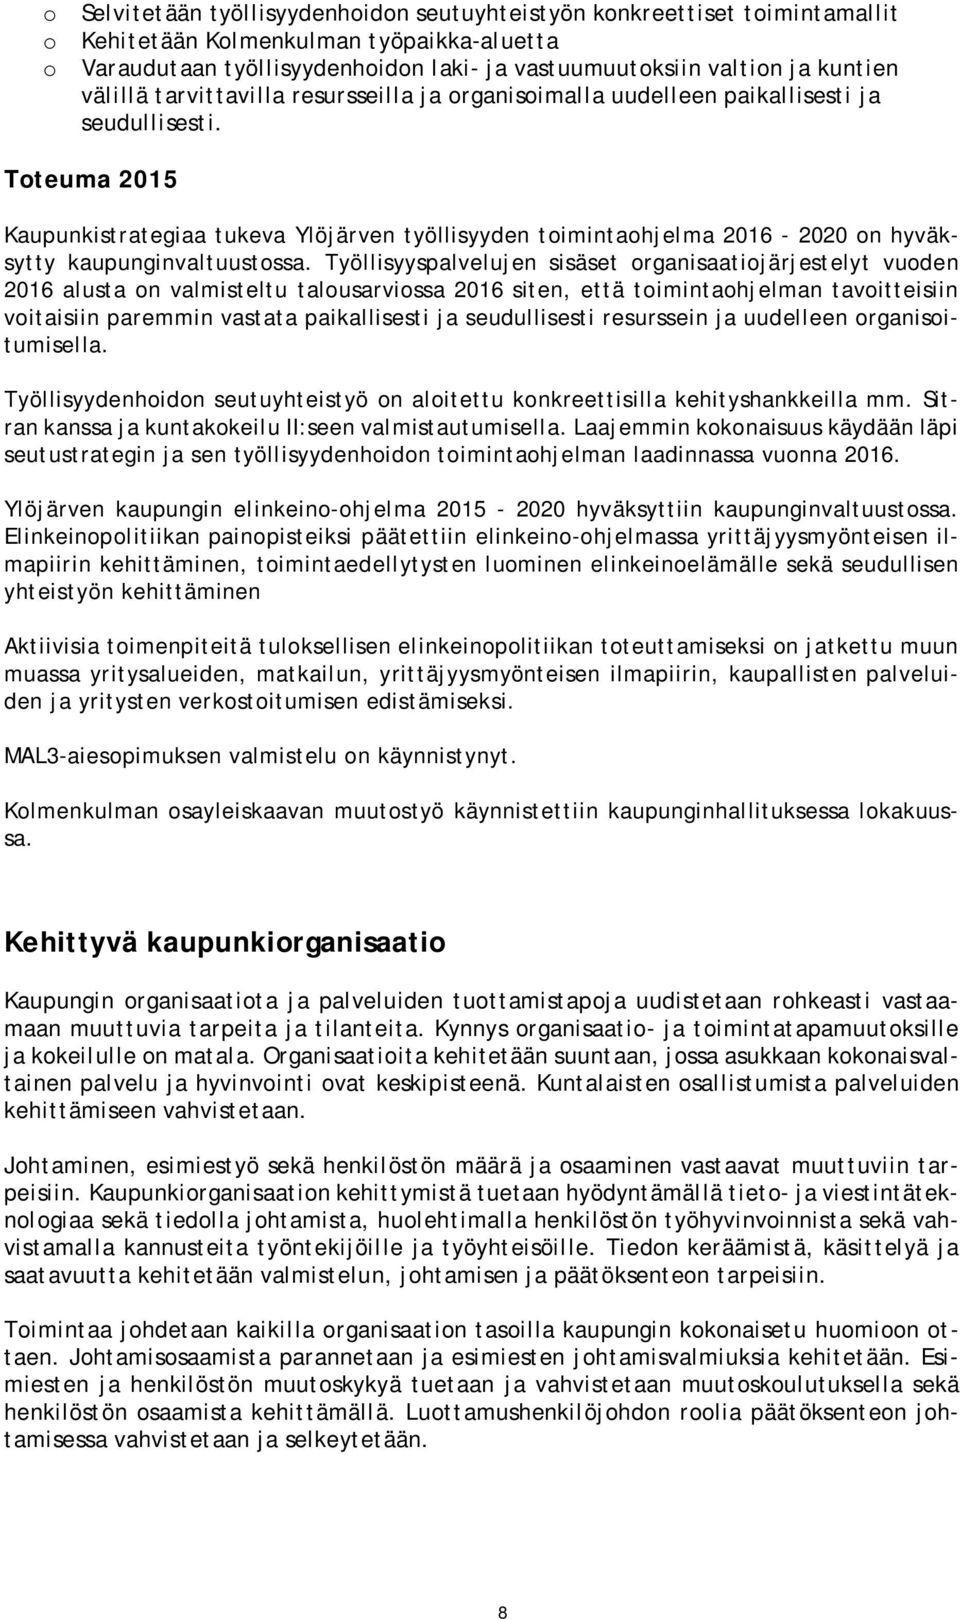 Toteuma 2015 Kaupunkistrategiaa tukeva Ylöjärven työllisyyden toimintaohjelma 2016-2020 on hyväksytty kaupunginvaltuustossa.